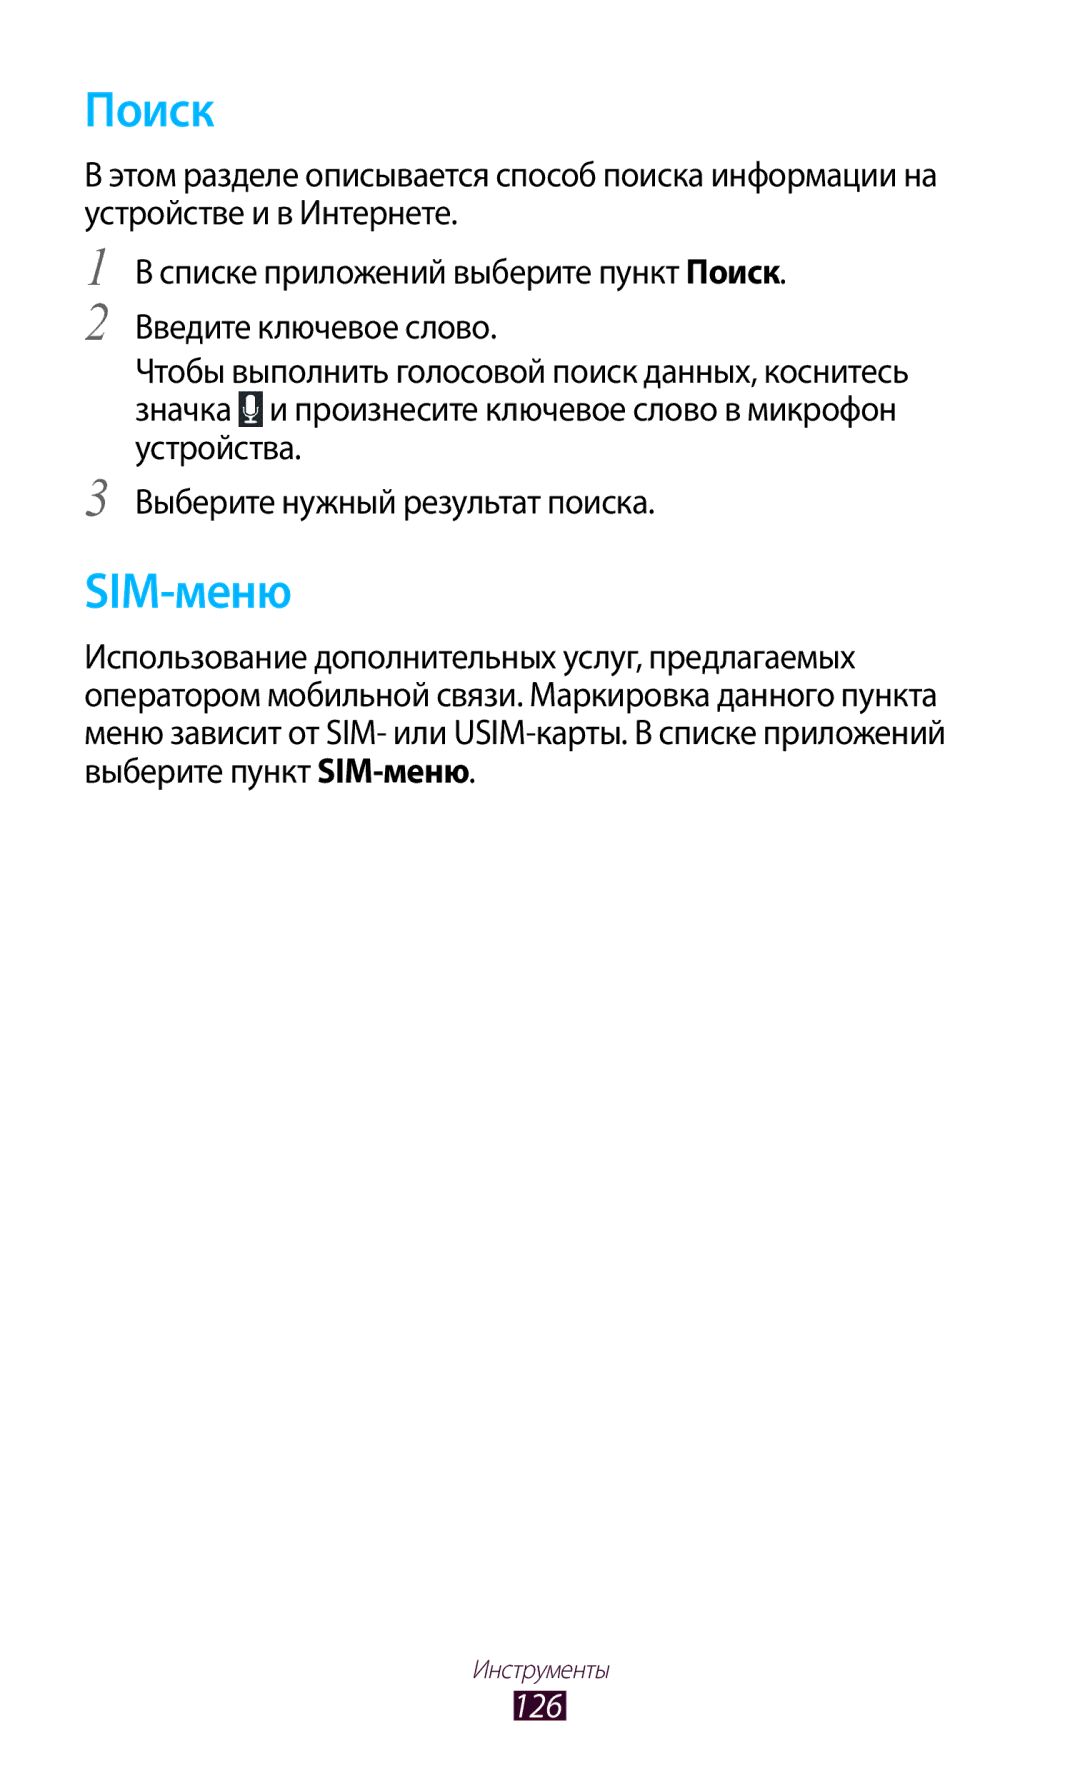 Samsung GT-S7560ZKASEB, GT-S7560UWASEB manual Поиск, SIM-меню, 126 